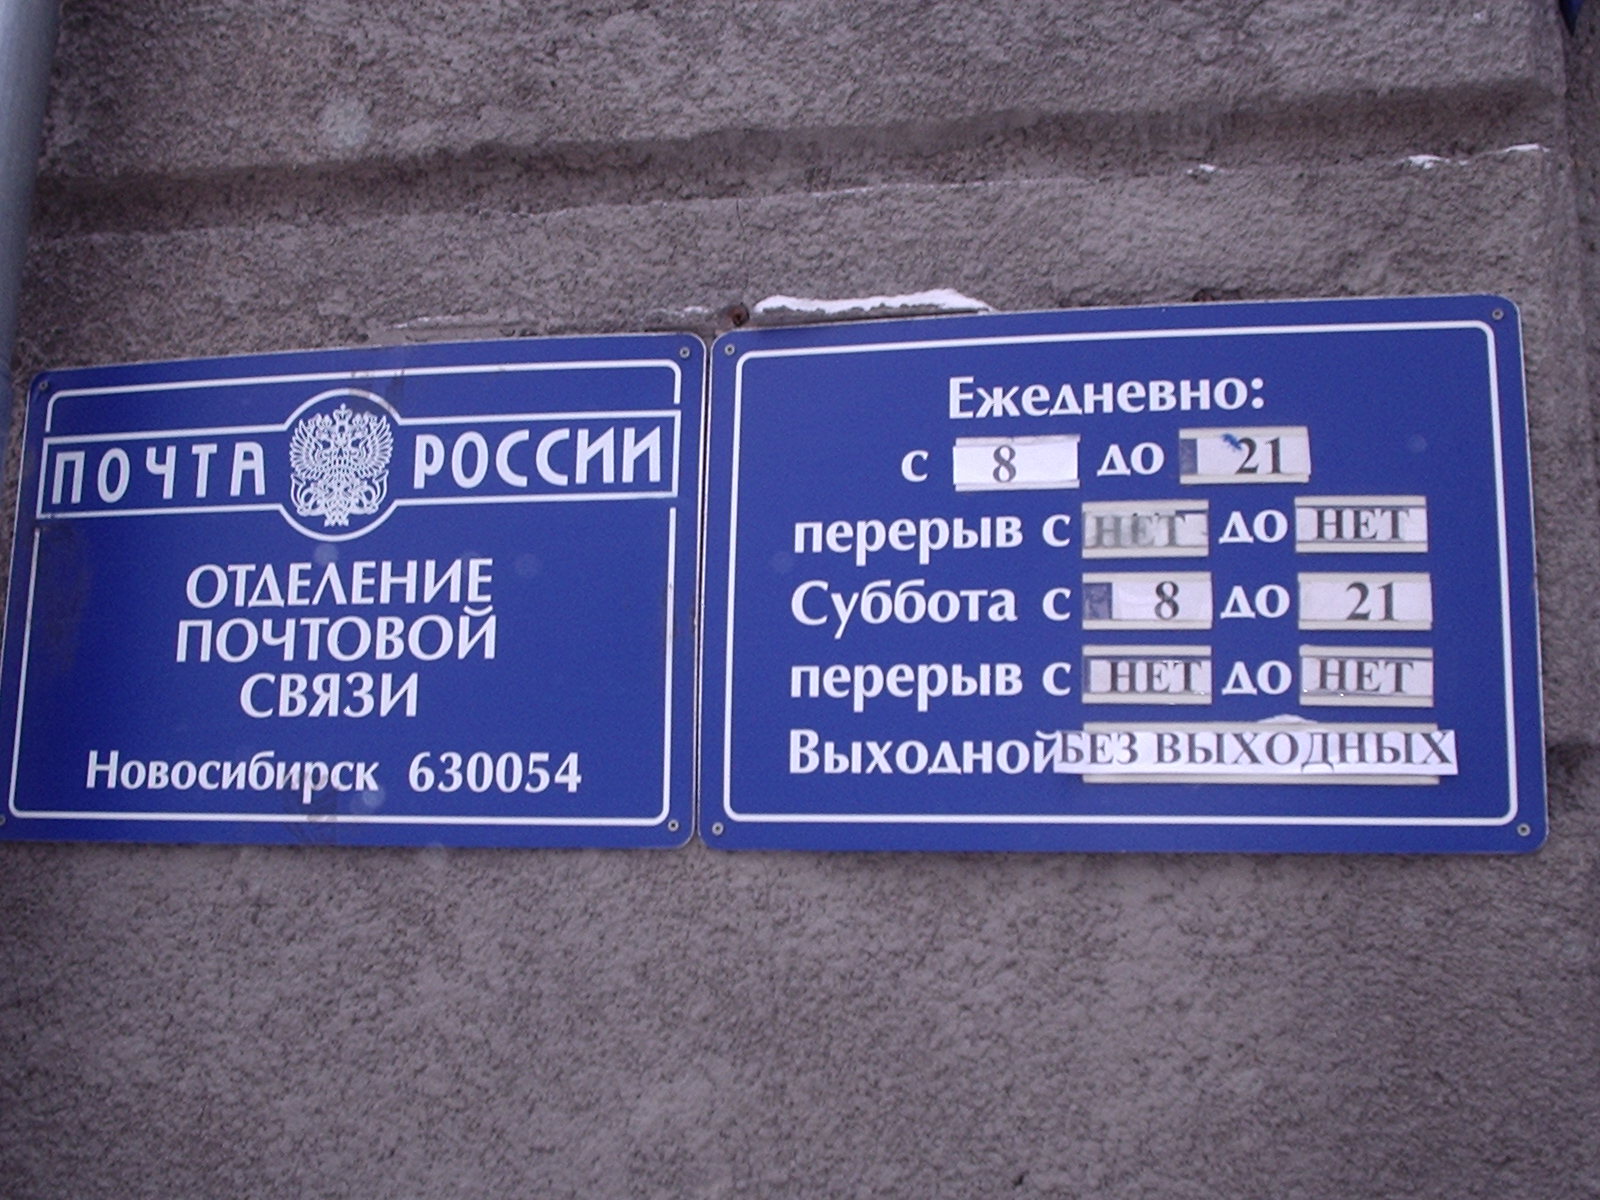 ВХОД, отделение почтовой связи 630054, Новосибирская обл., Новосибирск